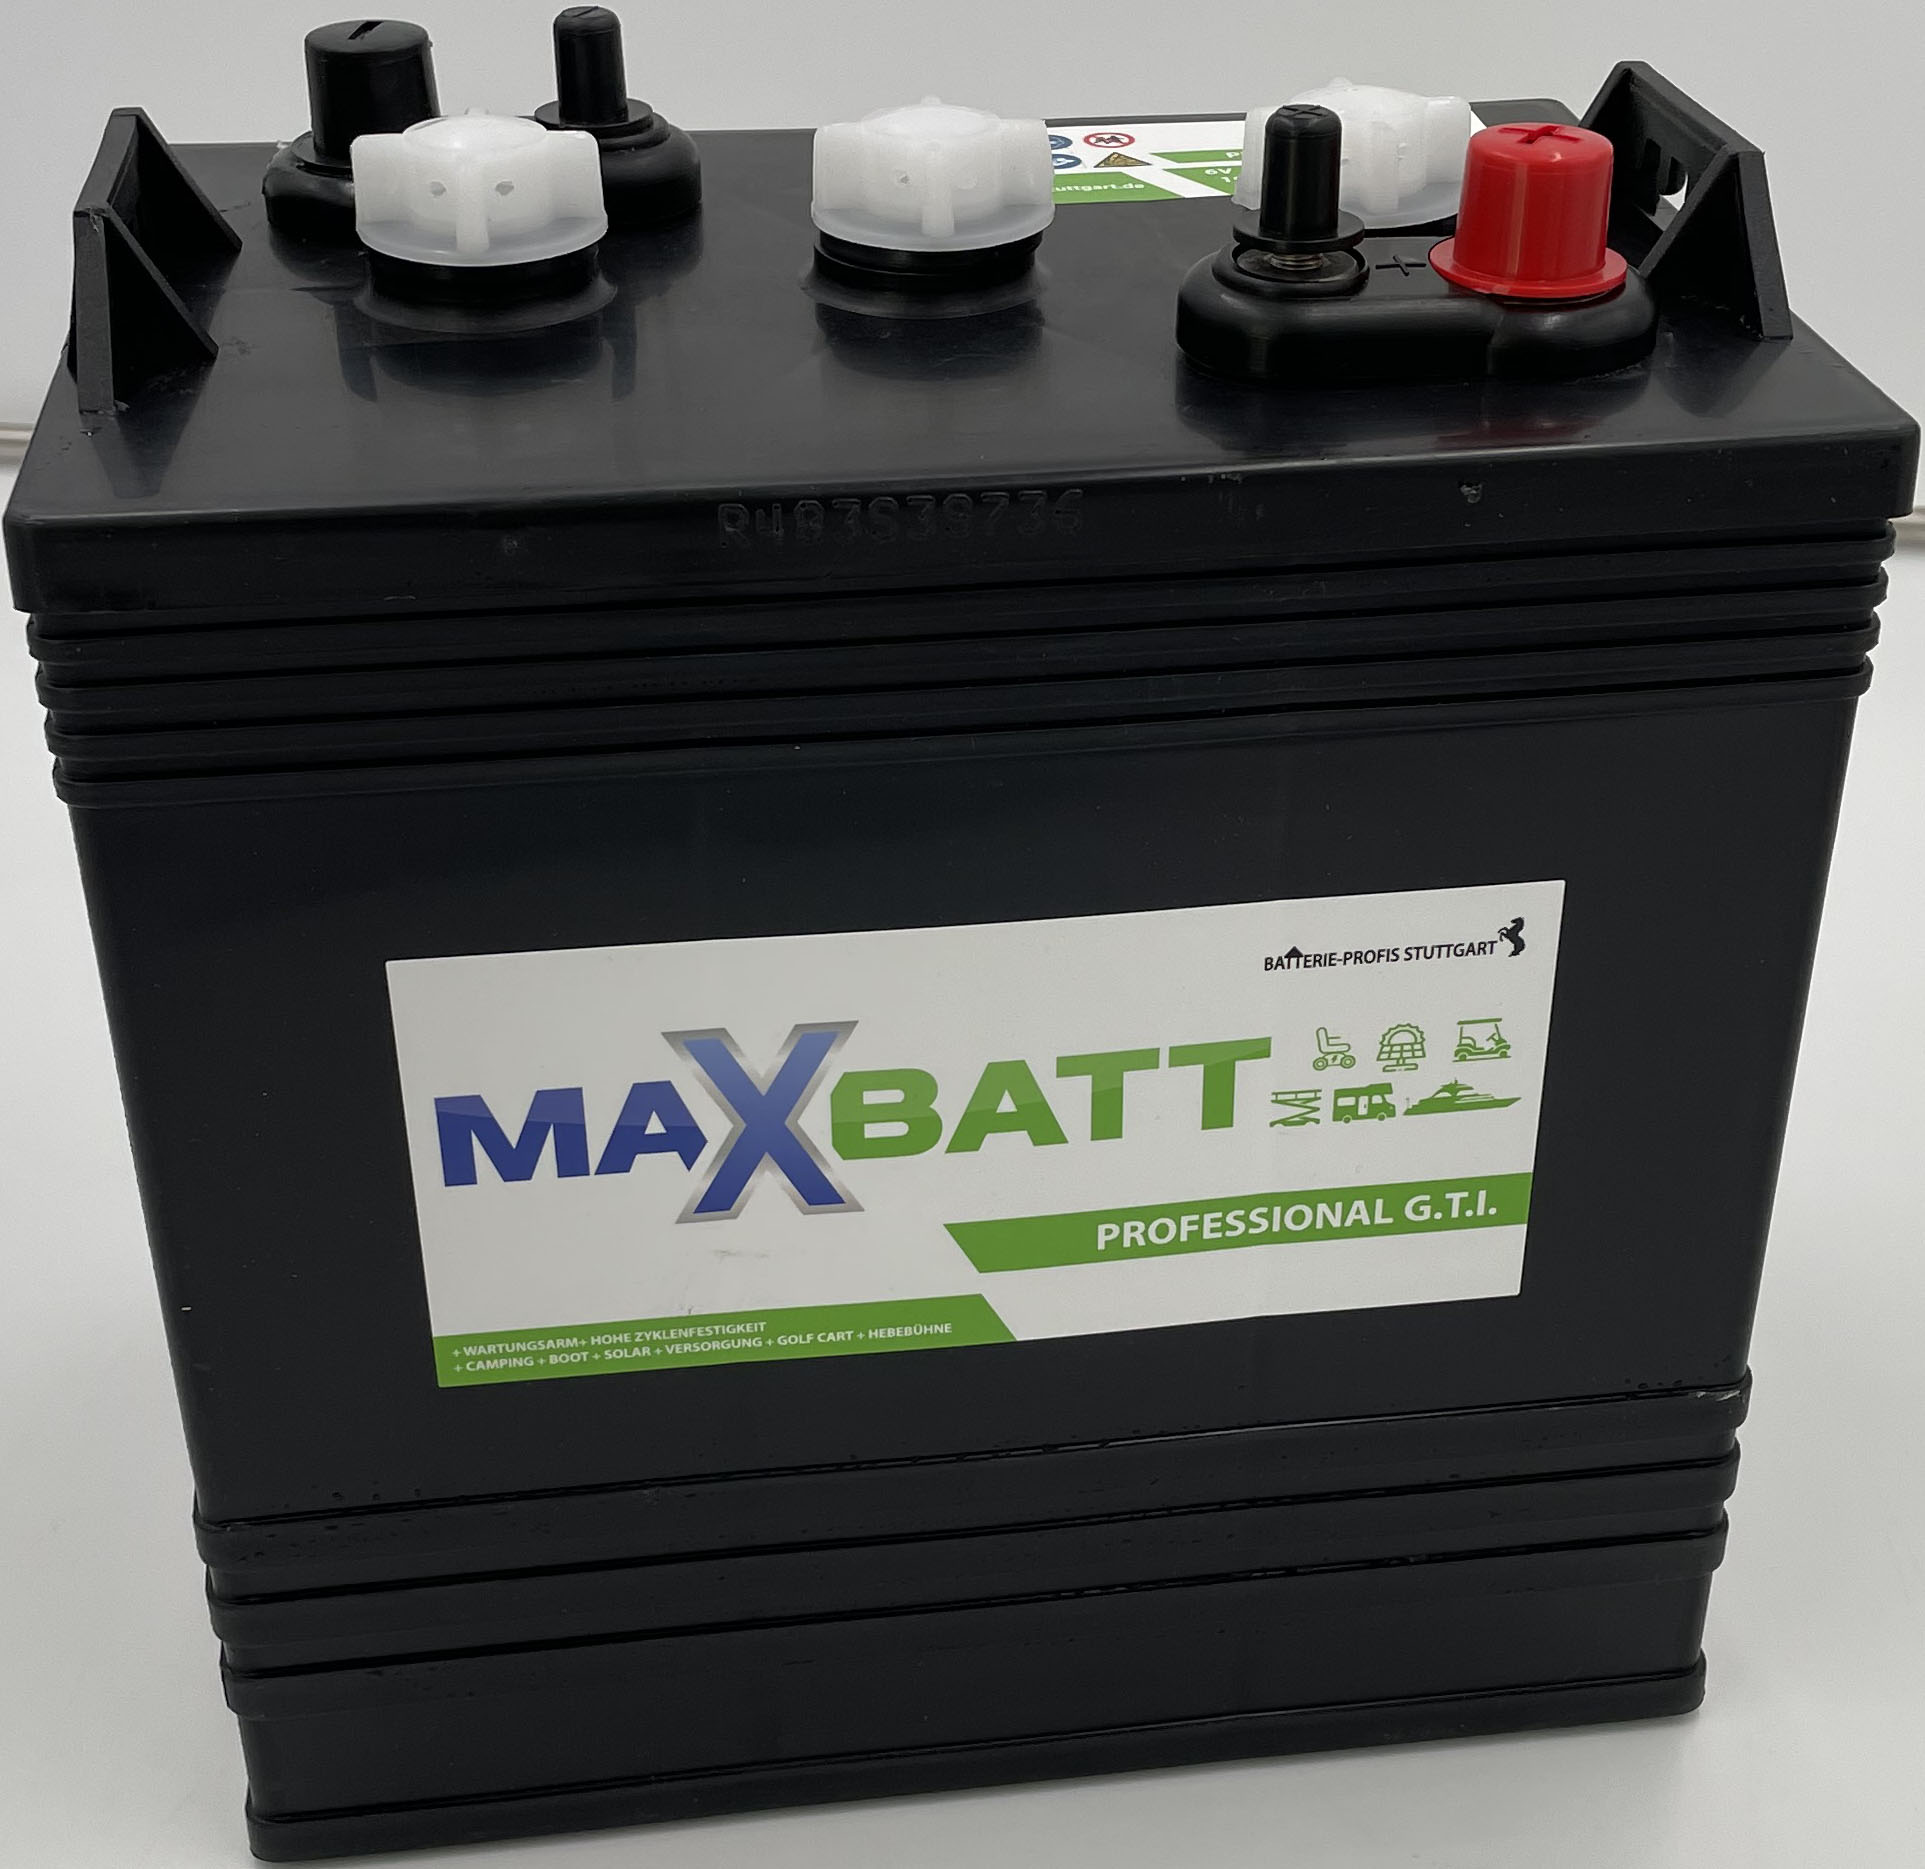 Maxbatt Professional G.T.I  6V 240Ah Deep Cycle Traktionsbatterie  G-125 